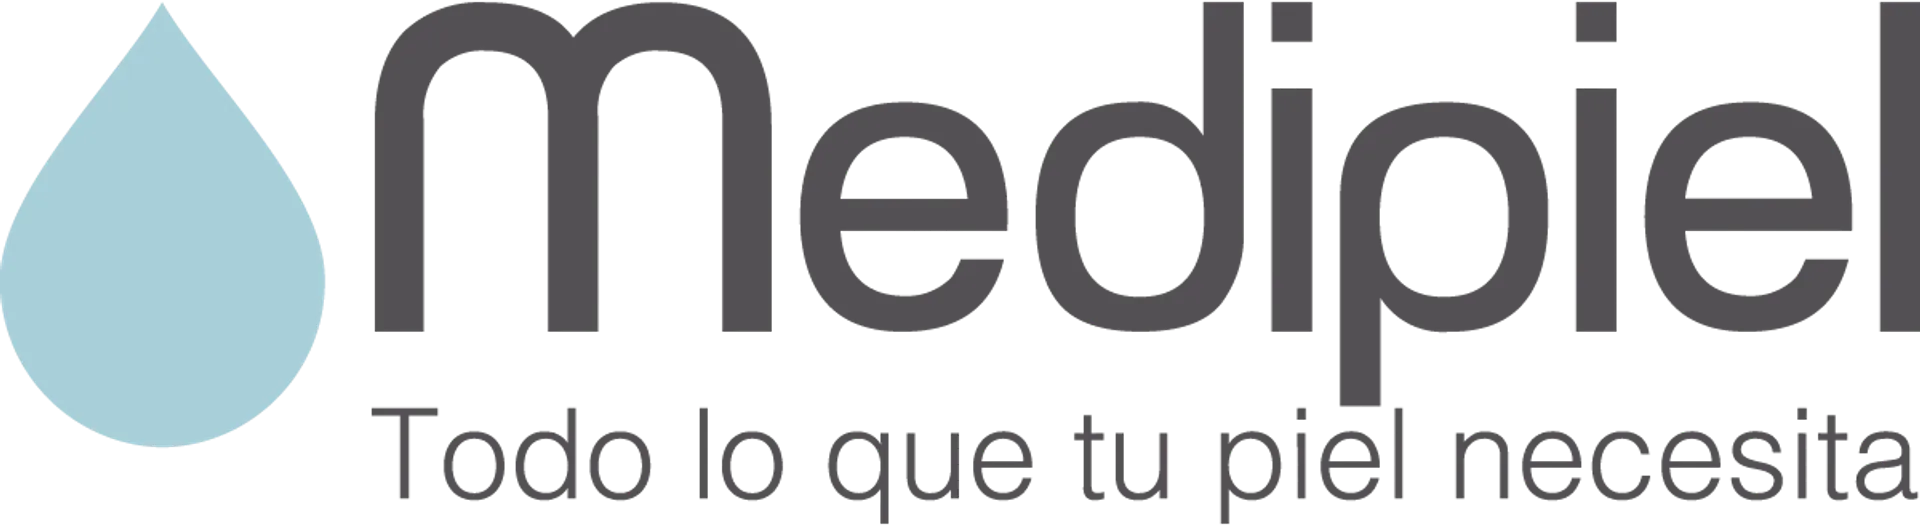 MEDIPIEL logo